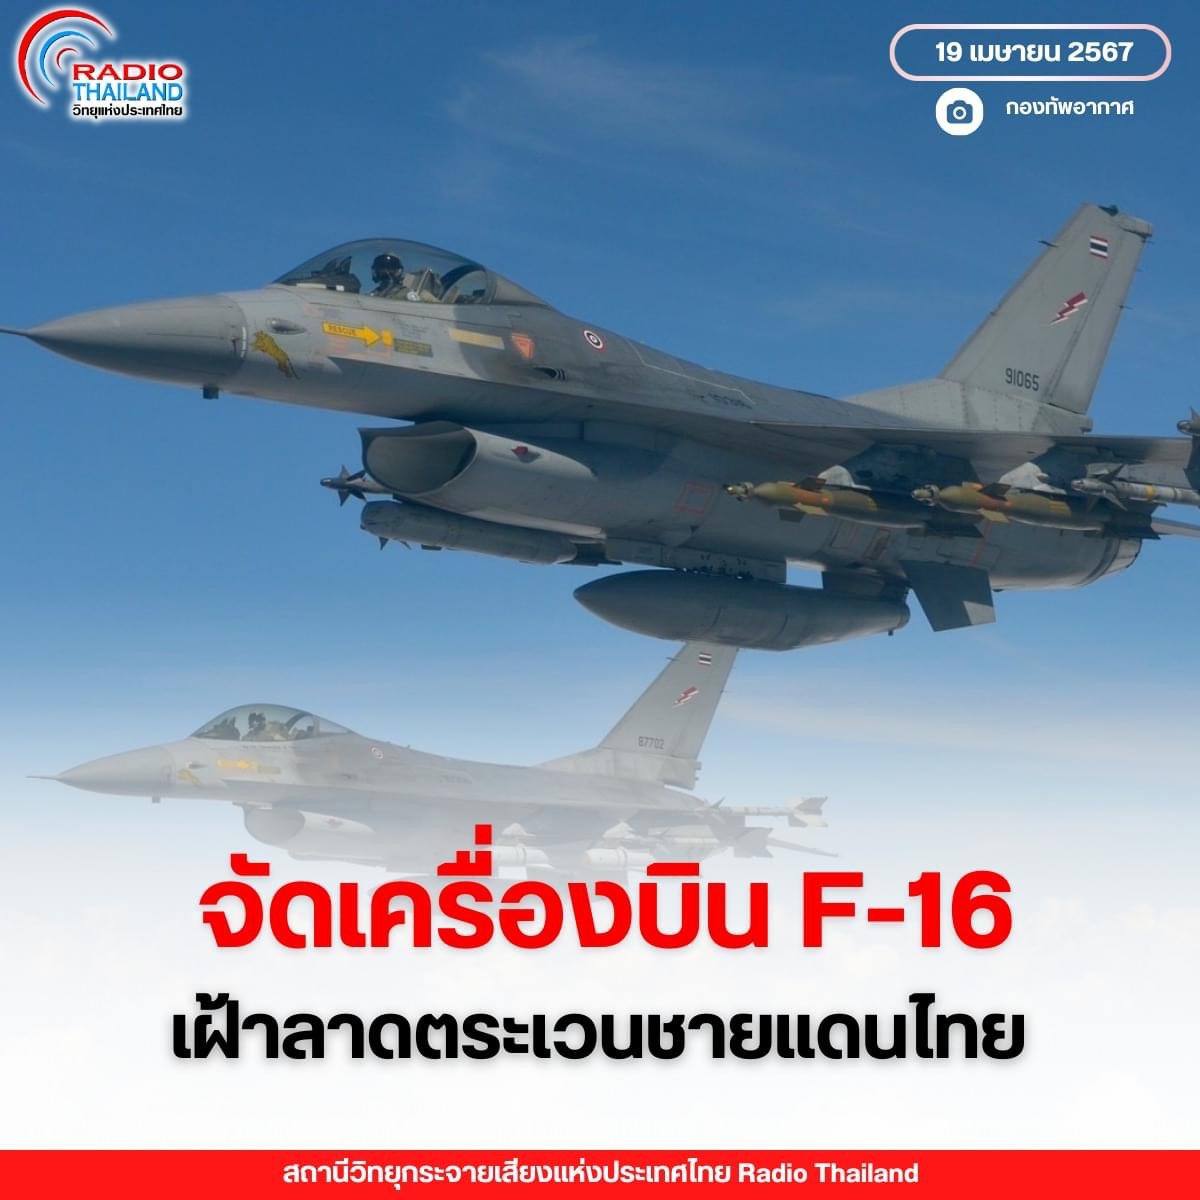 กองทัพอากาศ เตรียมจัดเครื่องบิน F-16 บินเฝ้าลาดตระเวนตามแนวชายแดนไทย